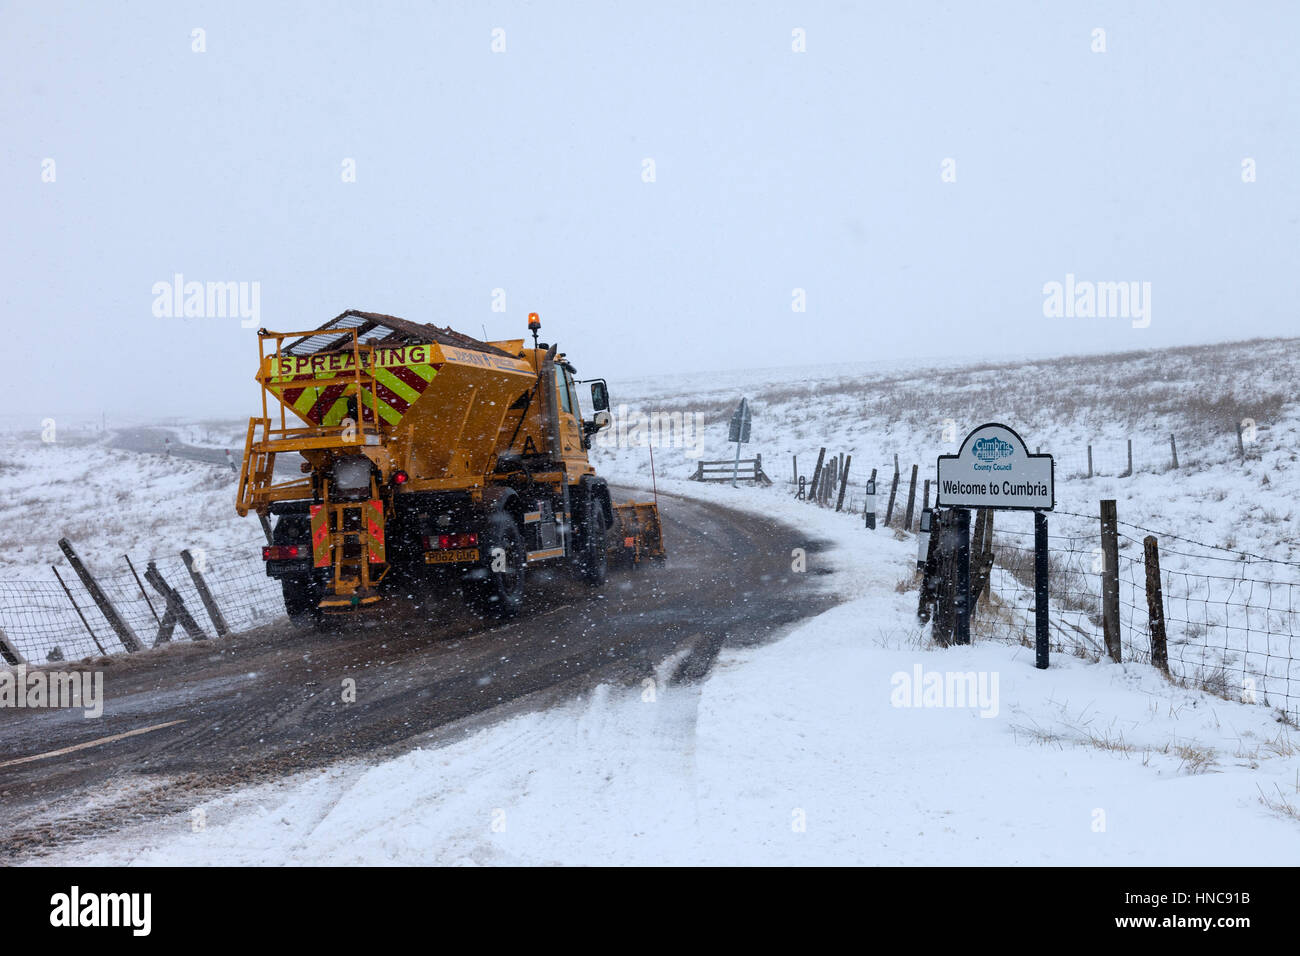 B6277, County Durham und Cumbria Grenze im Nordosten Englands. Samstag, 11. Februar 2017, UK Wetter. Schnee ist die B6277-Straße zwischen Middleton-in-Teesdale und Alston an der County Durham und Cumbria Grenze heute Nachmittag beeinflussen. Bedeutende Ansammlungen von mehr als 10cm sind für hohe Routen über den North Pennines über das Wochenende prognostiziert. Bildnachweis: David Forster/Alamy Live-Nachrichten Stockfoto